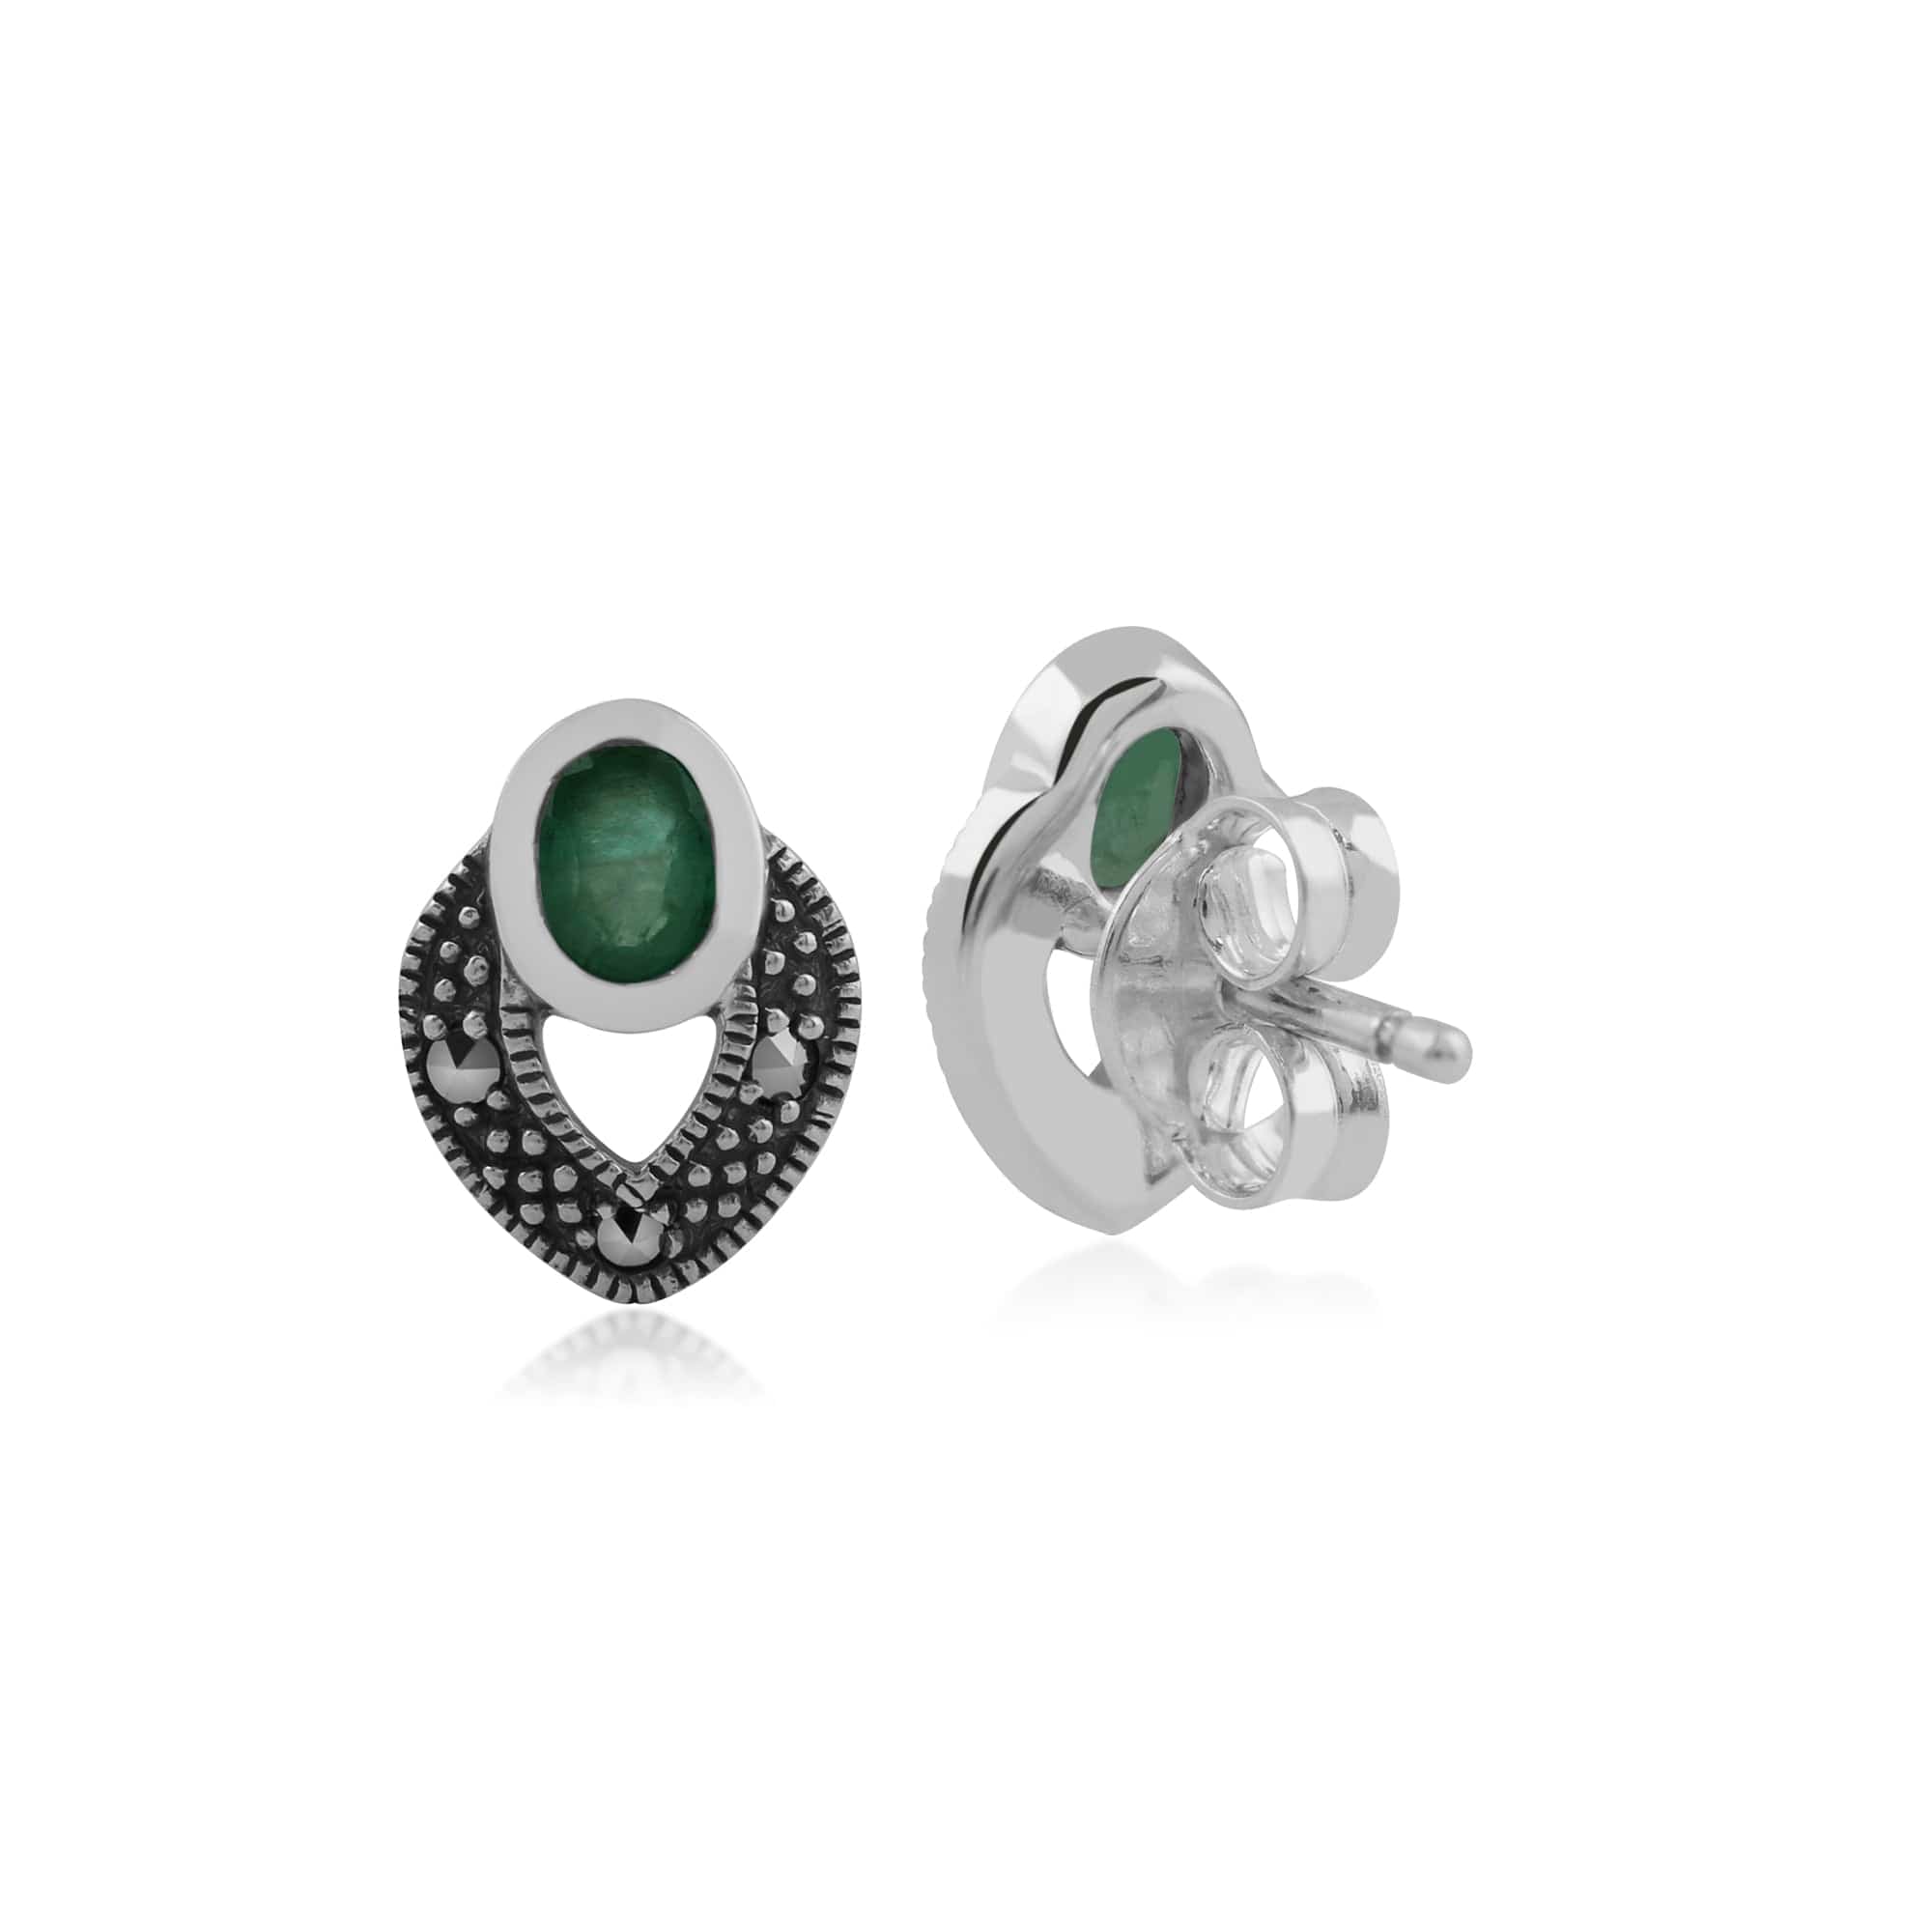 Art Deco Style Oval Emerald & Marcasite Stud Earrings in 925 Sterling Silver - Gemondo